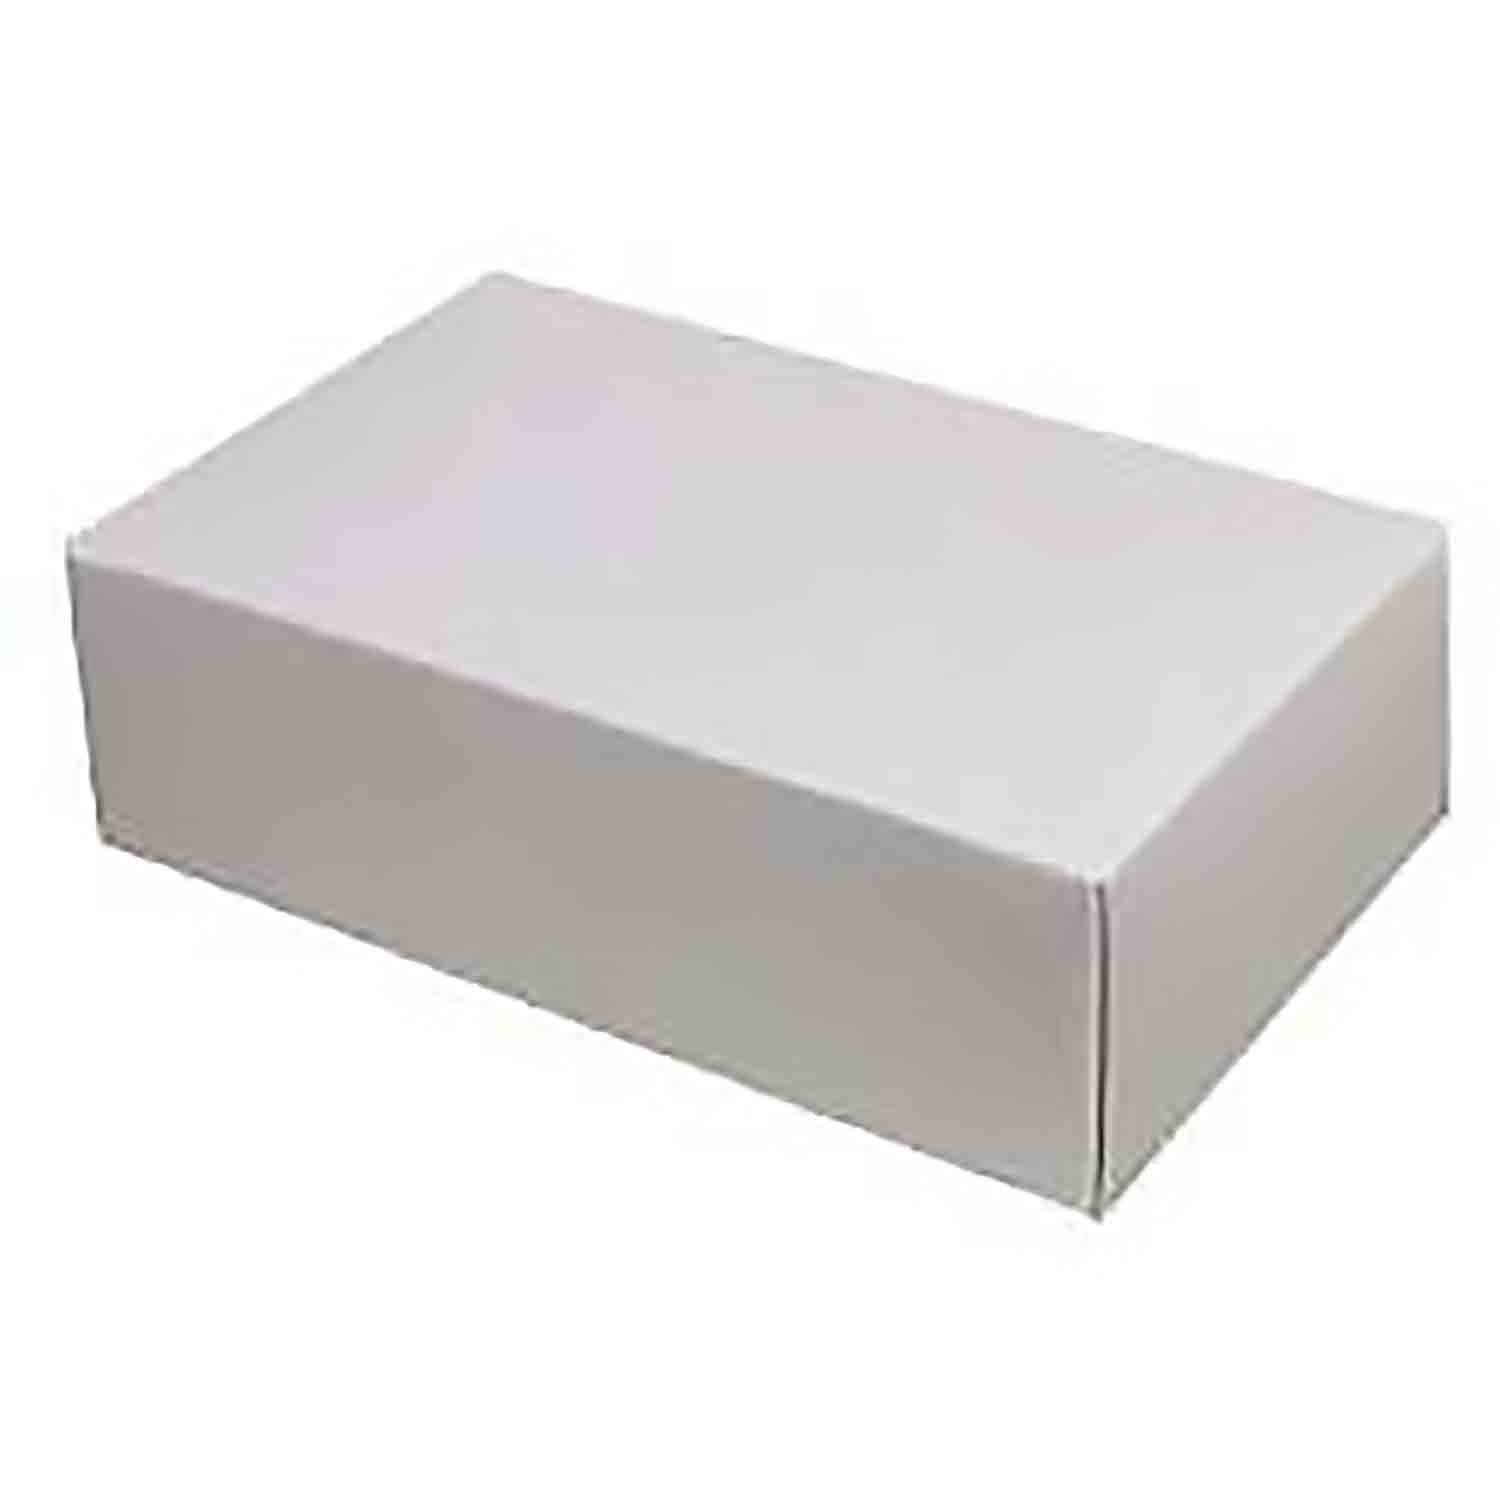 1 lb White 2-Layer Candy Box